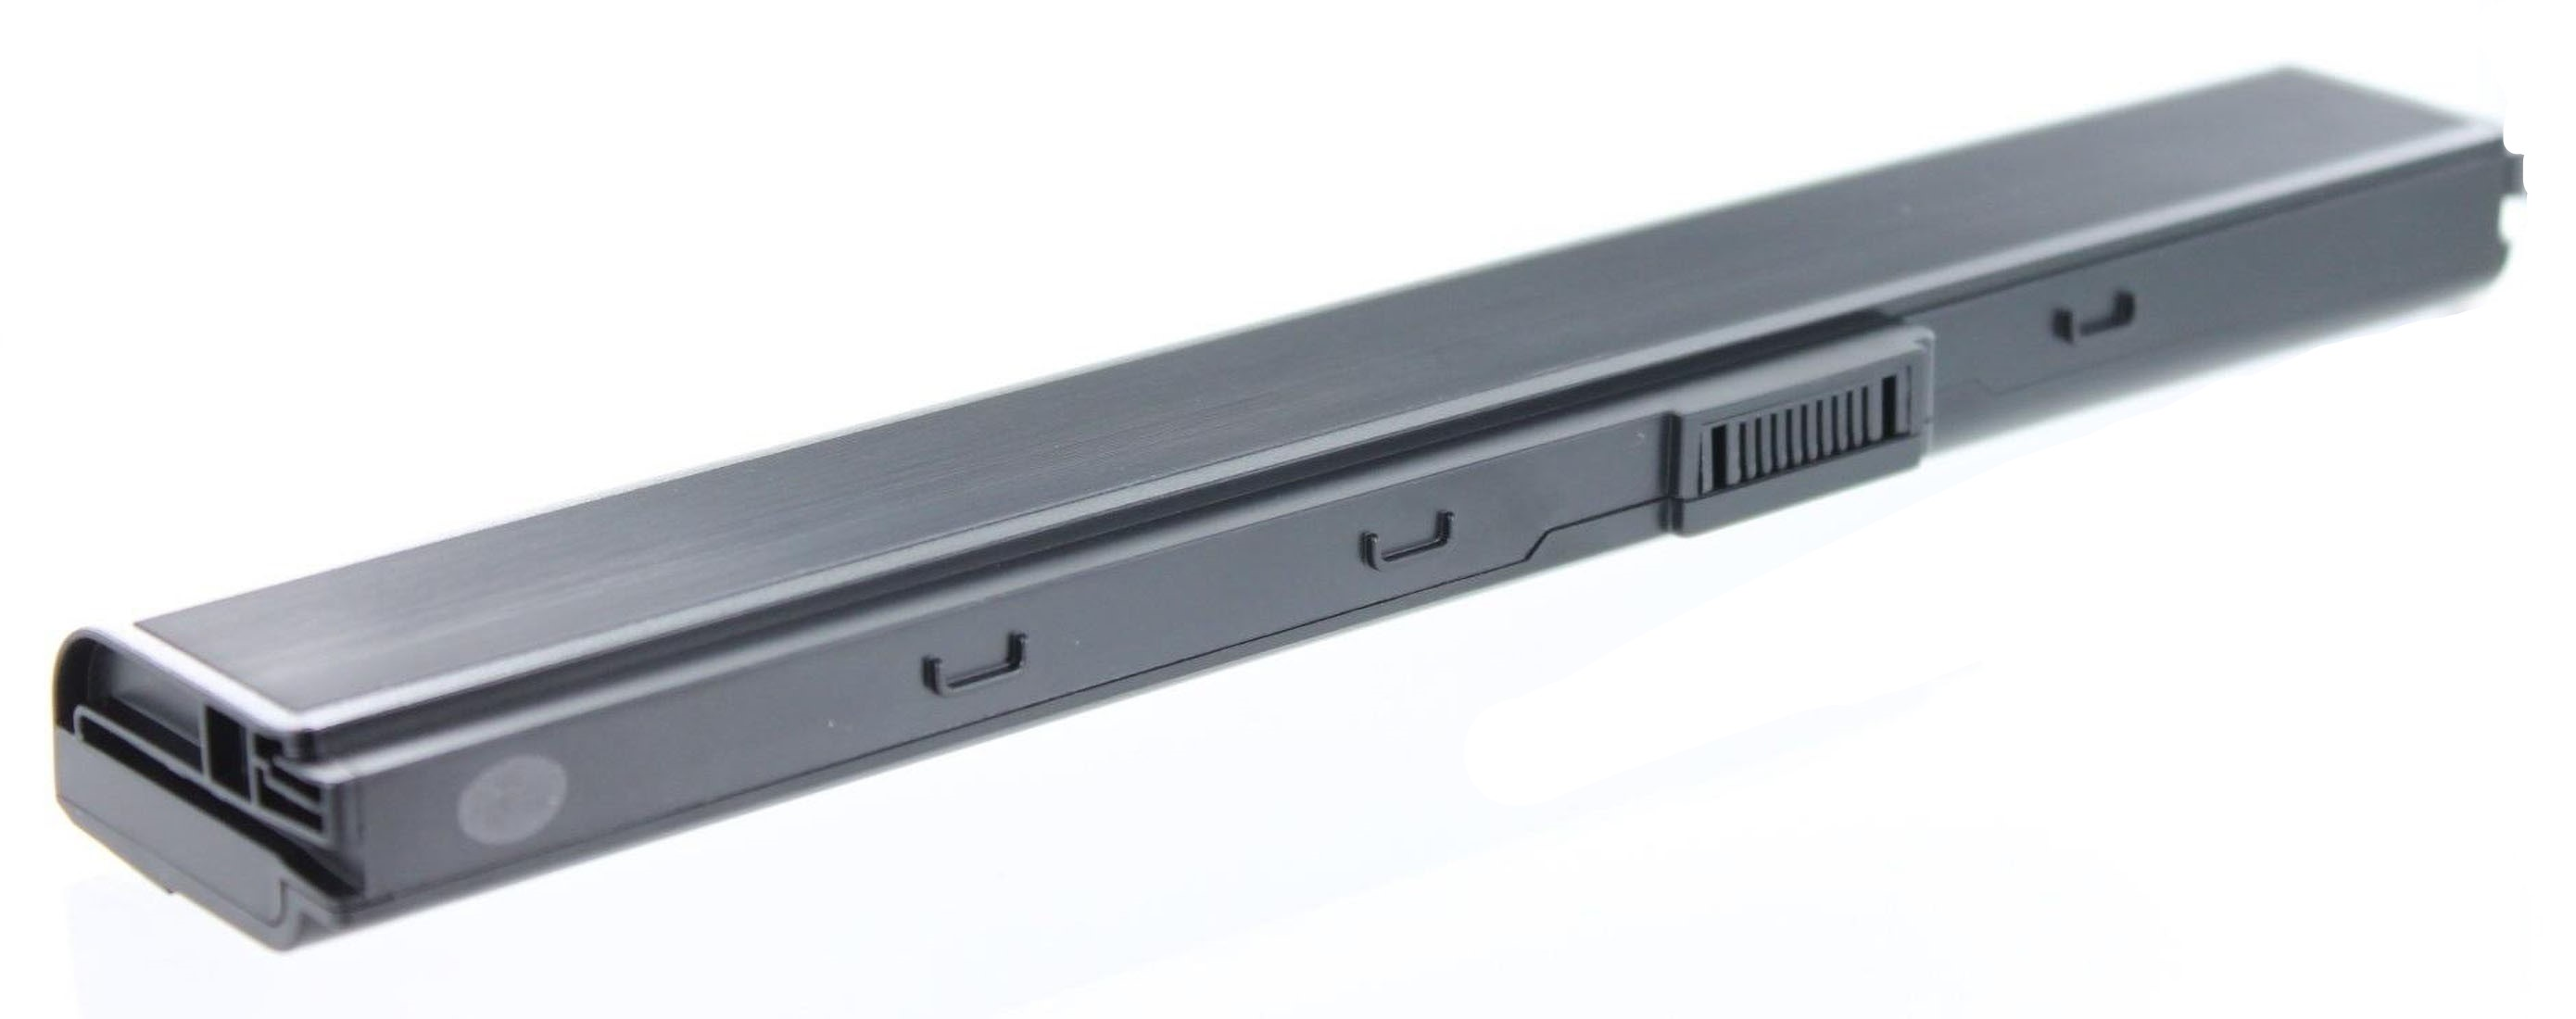 AGI Akku kompatibel mit Asus Volt, 4400 mAh Pro5IJT-SX620V Li-Ion, Li-Ion Notebookakku, 10.8